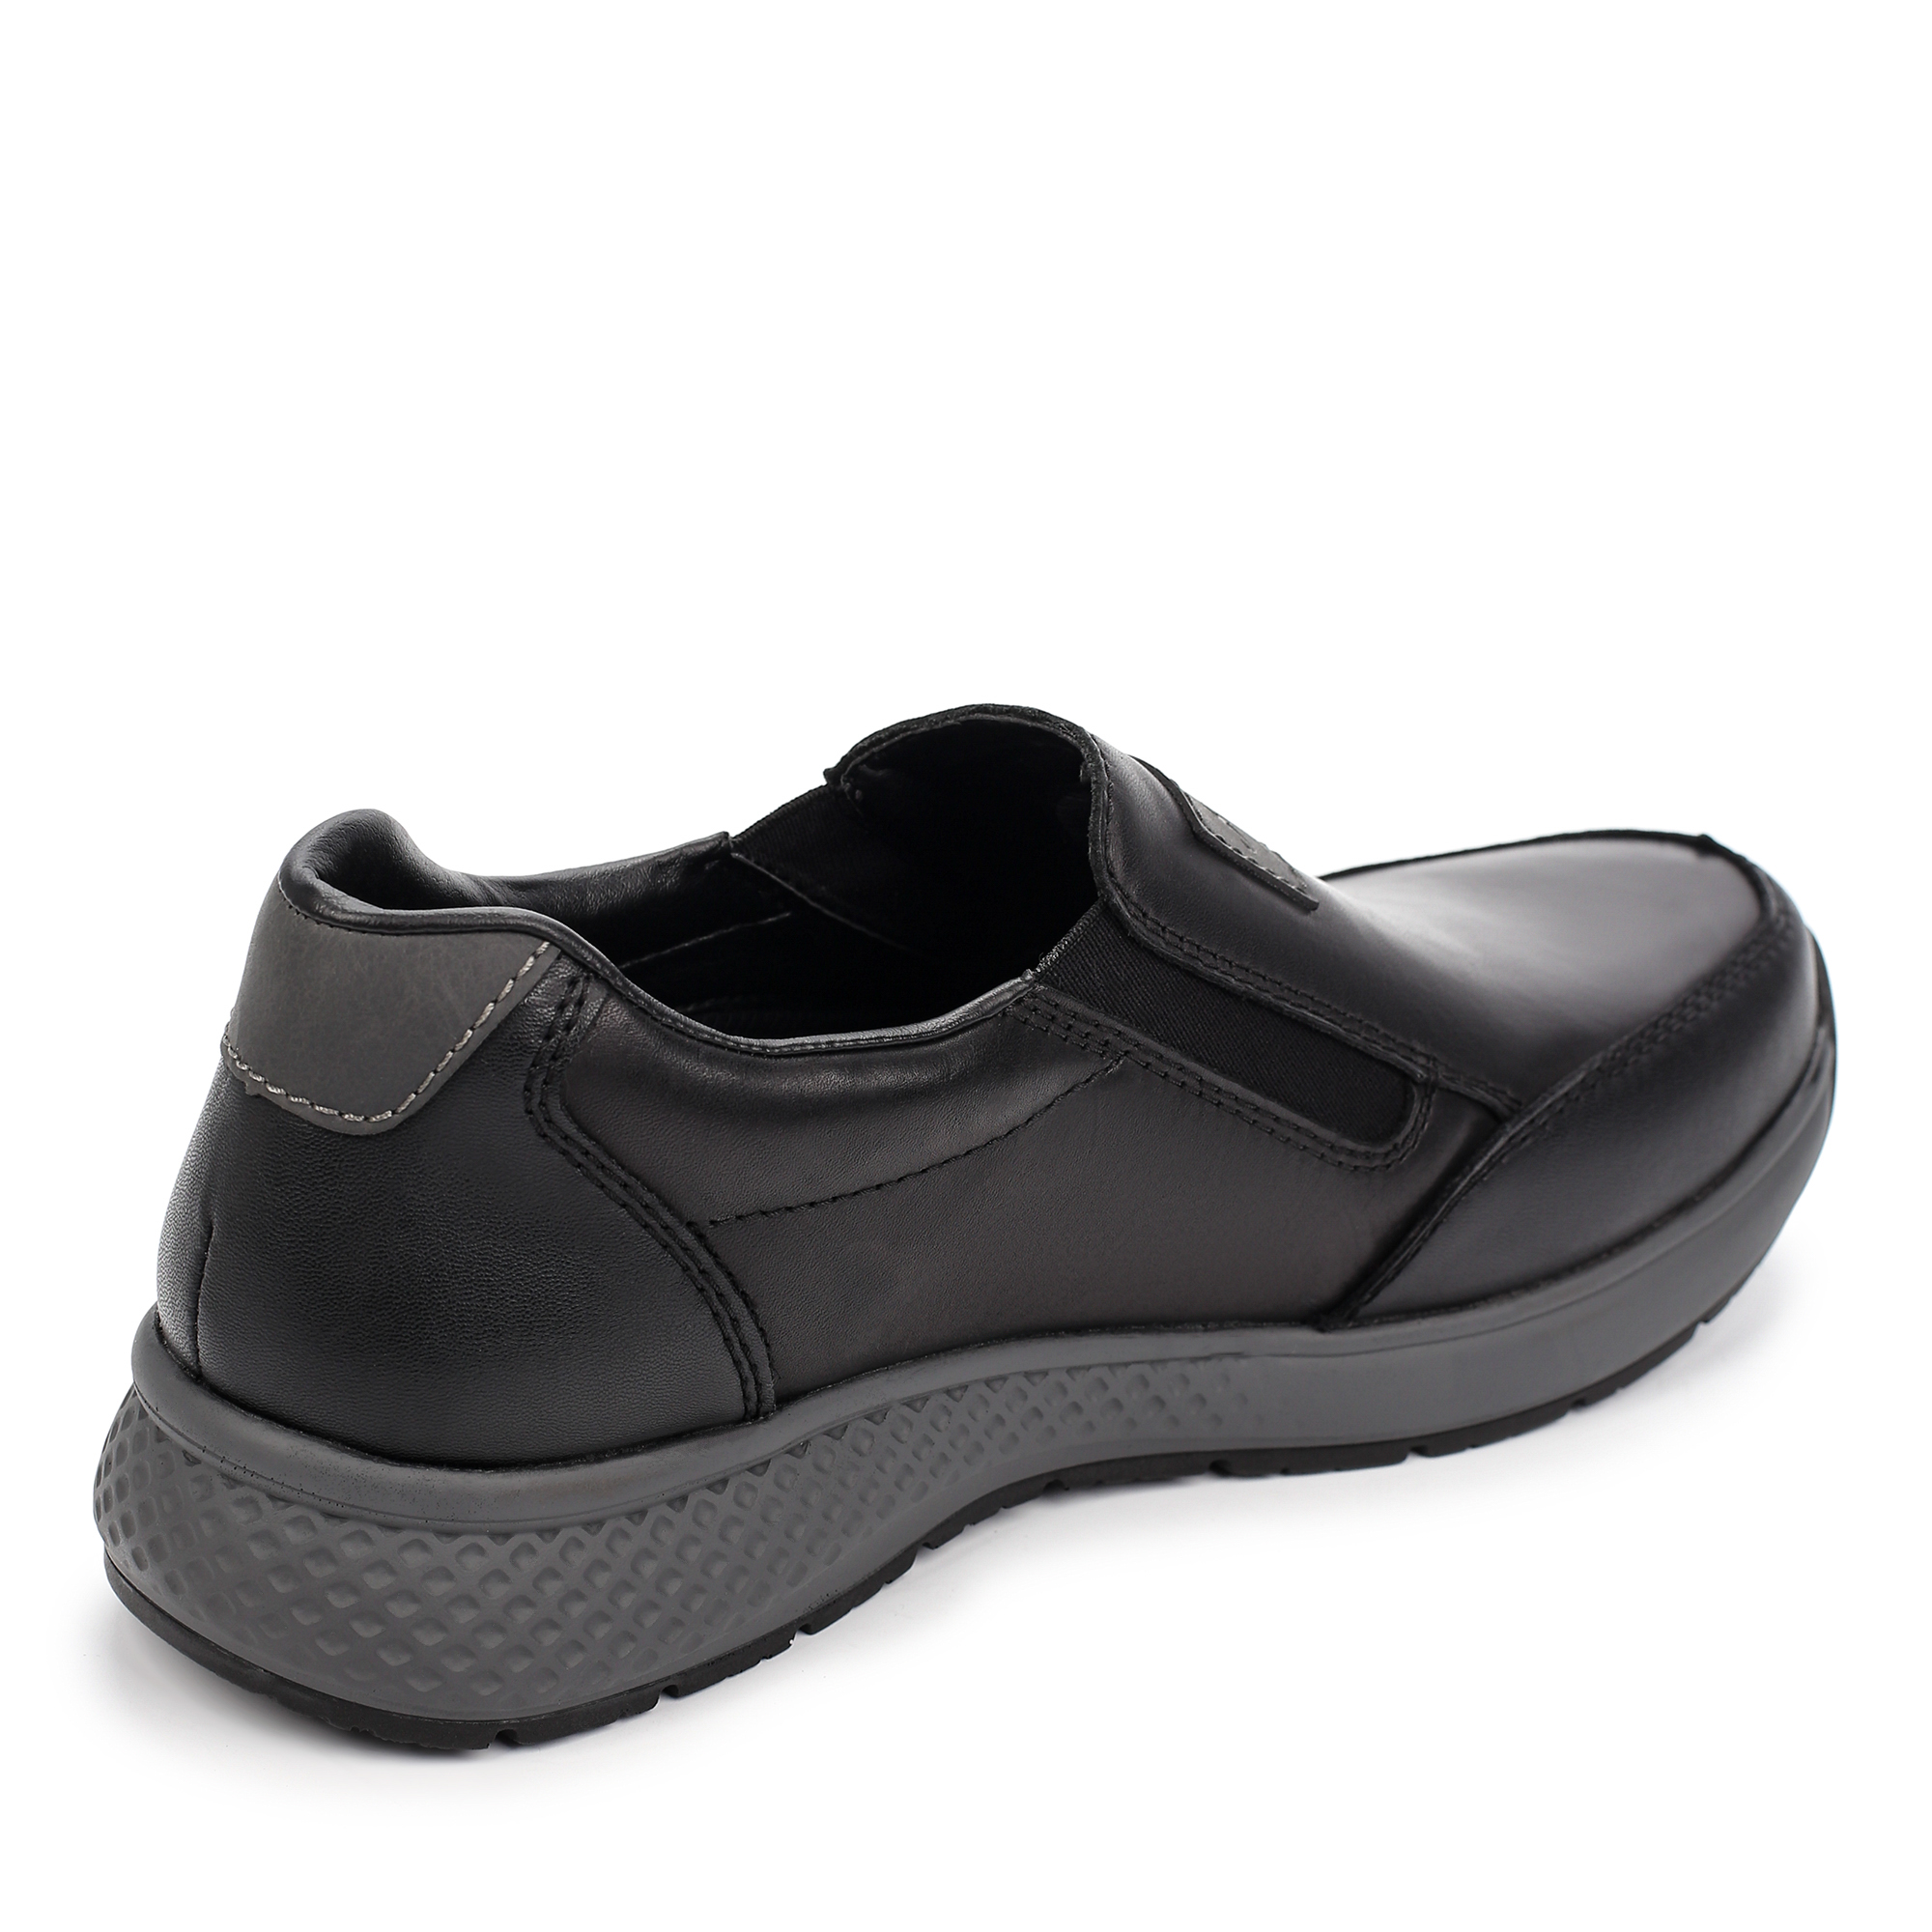 Туфли/полуботинки Rieker B7654-00, цвет черный, размер 41 - фото 3